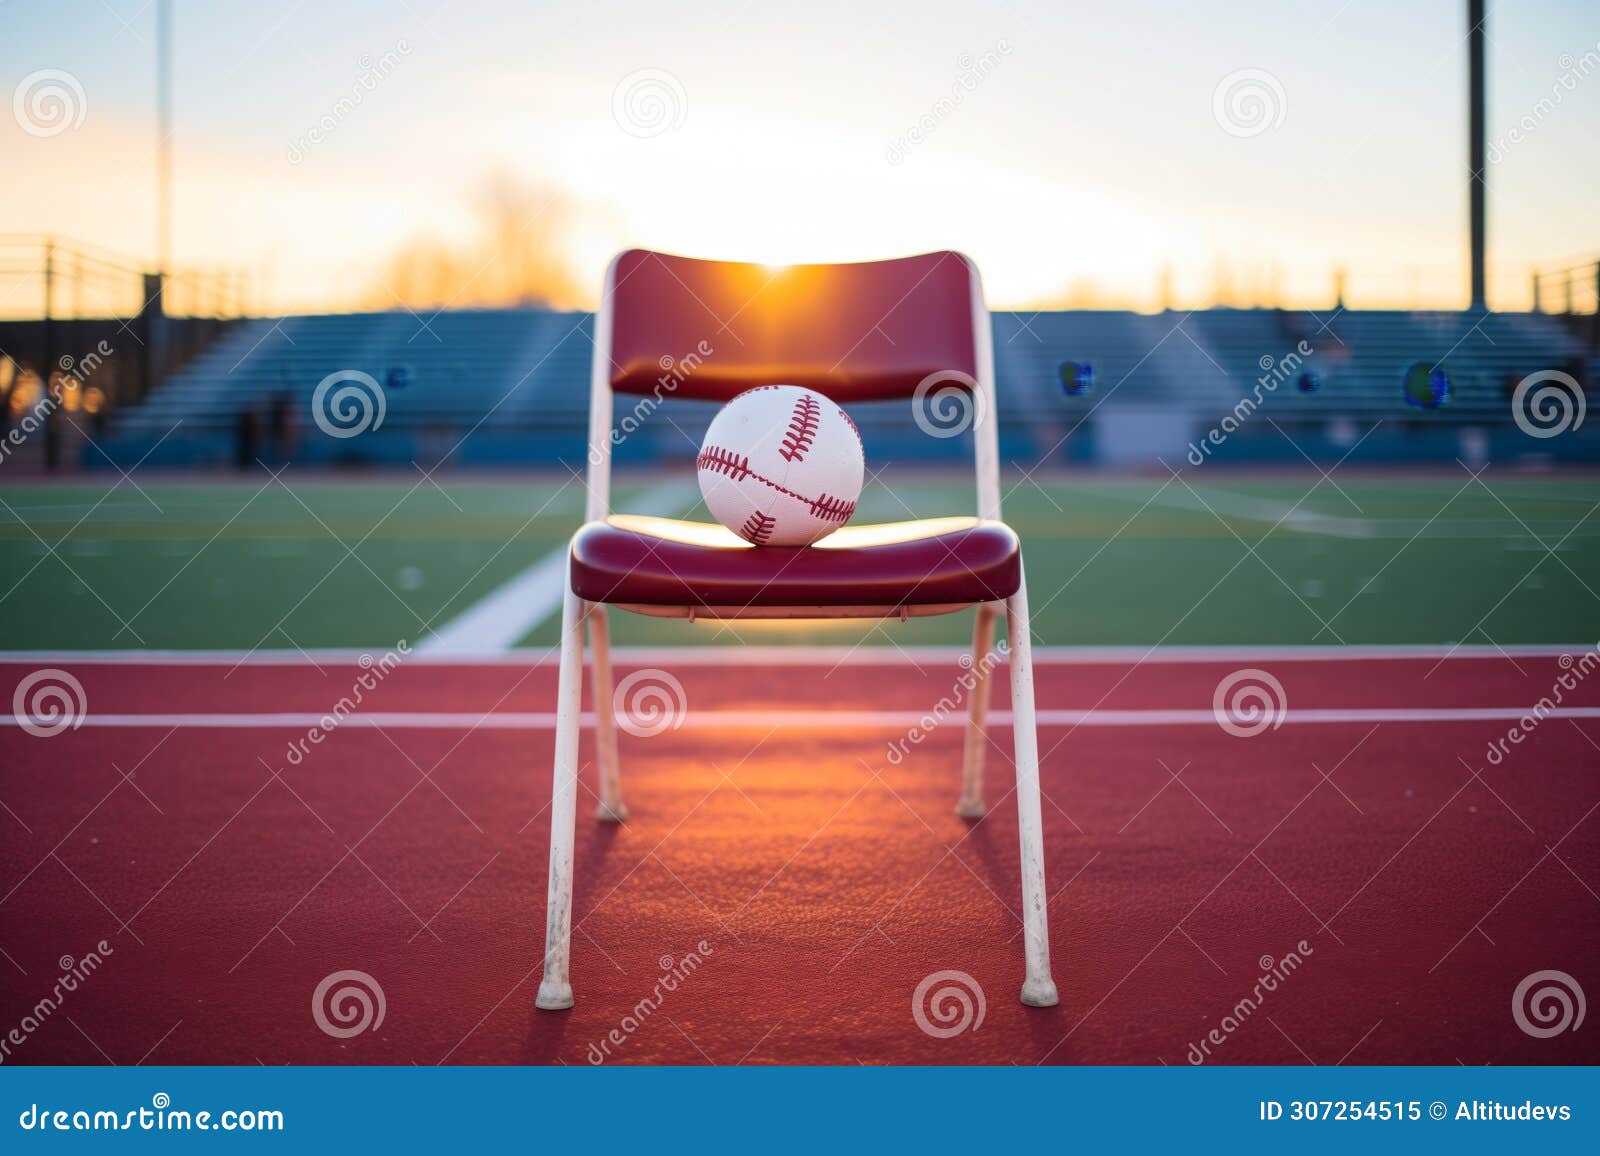 kickball on a maroon stadium seat during sunset